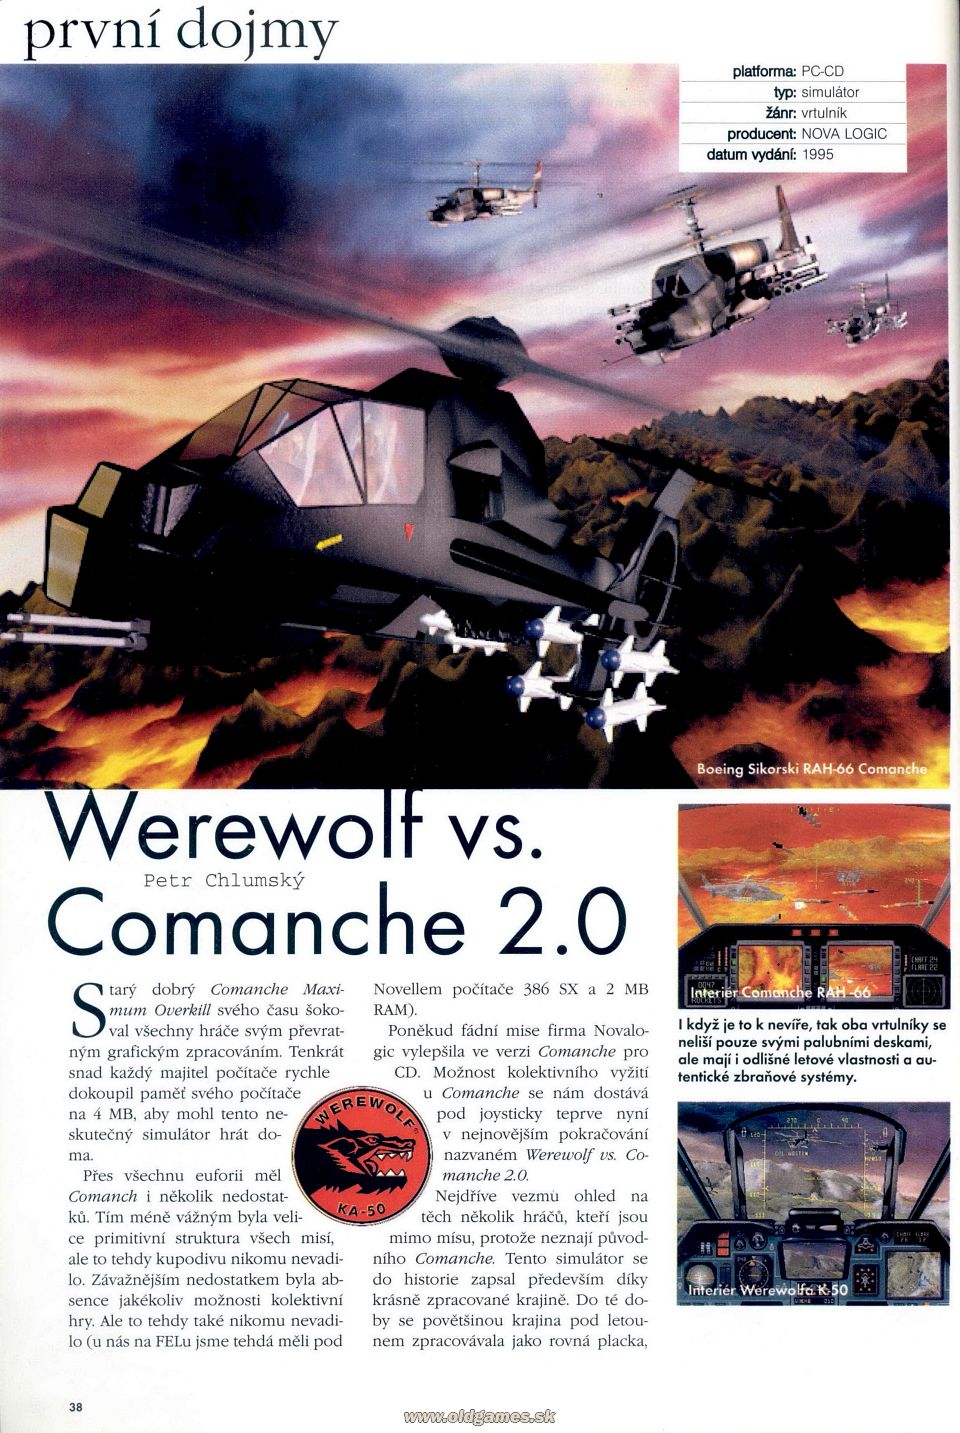 Werewolf vs. Comanche 2.0 - Preview